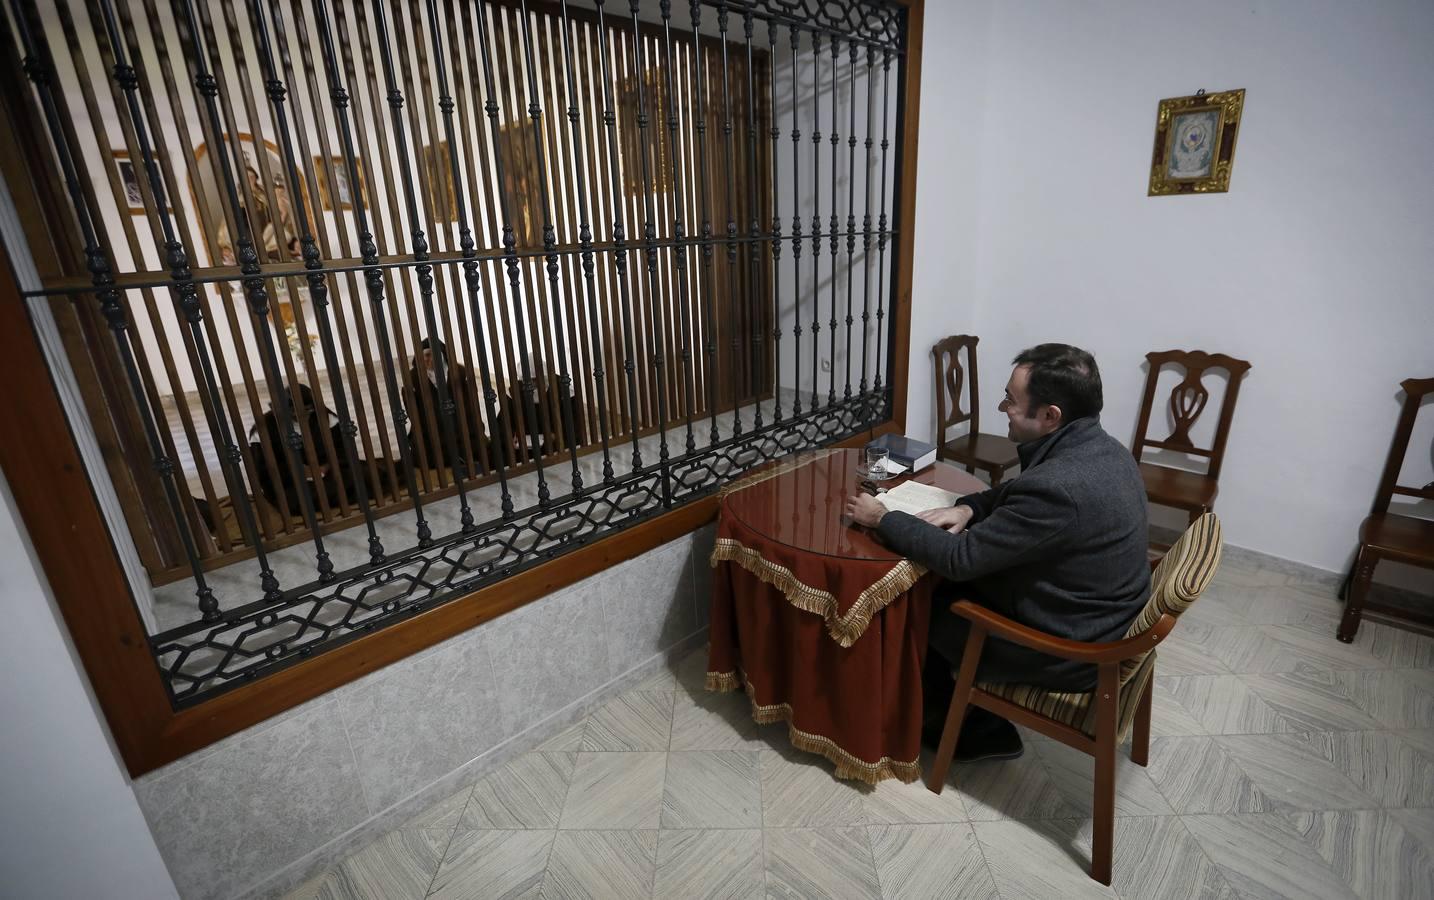 La vida en los conventos de clausura en Aguilar, San Calixto y Hornachuelos de Córdoba